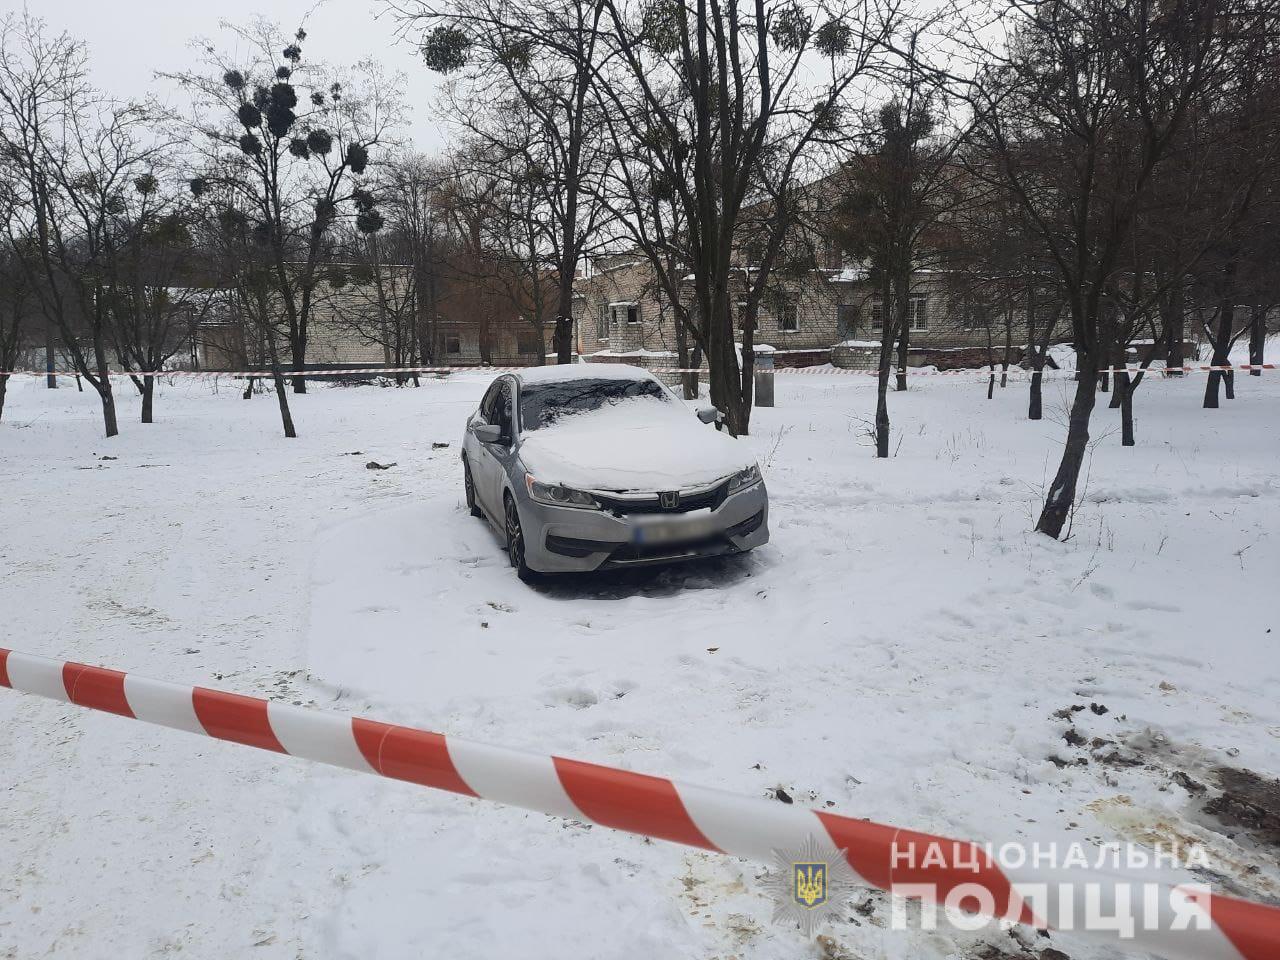 В Холодногорском районе в салоне припаркованного авто найдено тело с огнестрельным ранением | Новости Харькова и Украины - АТН